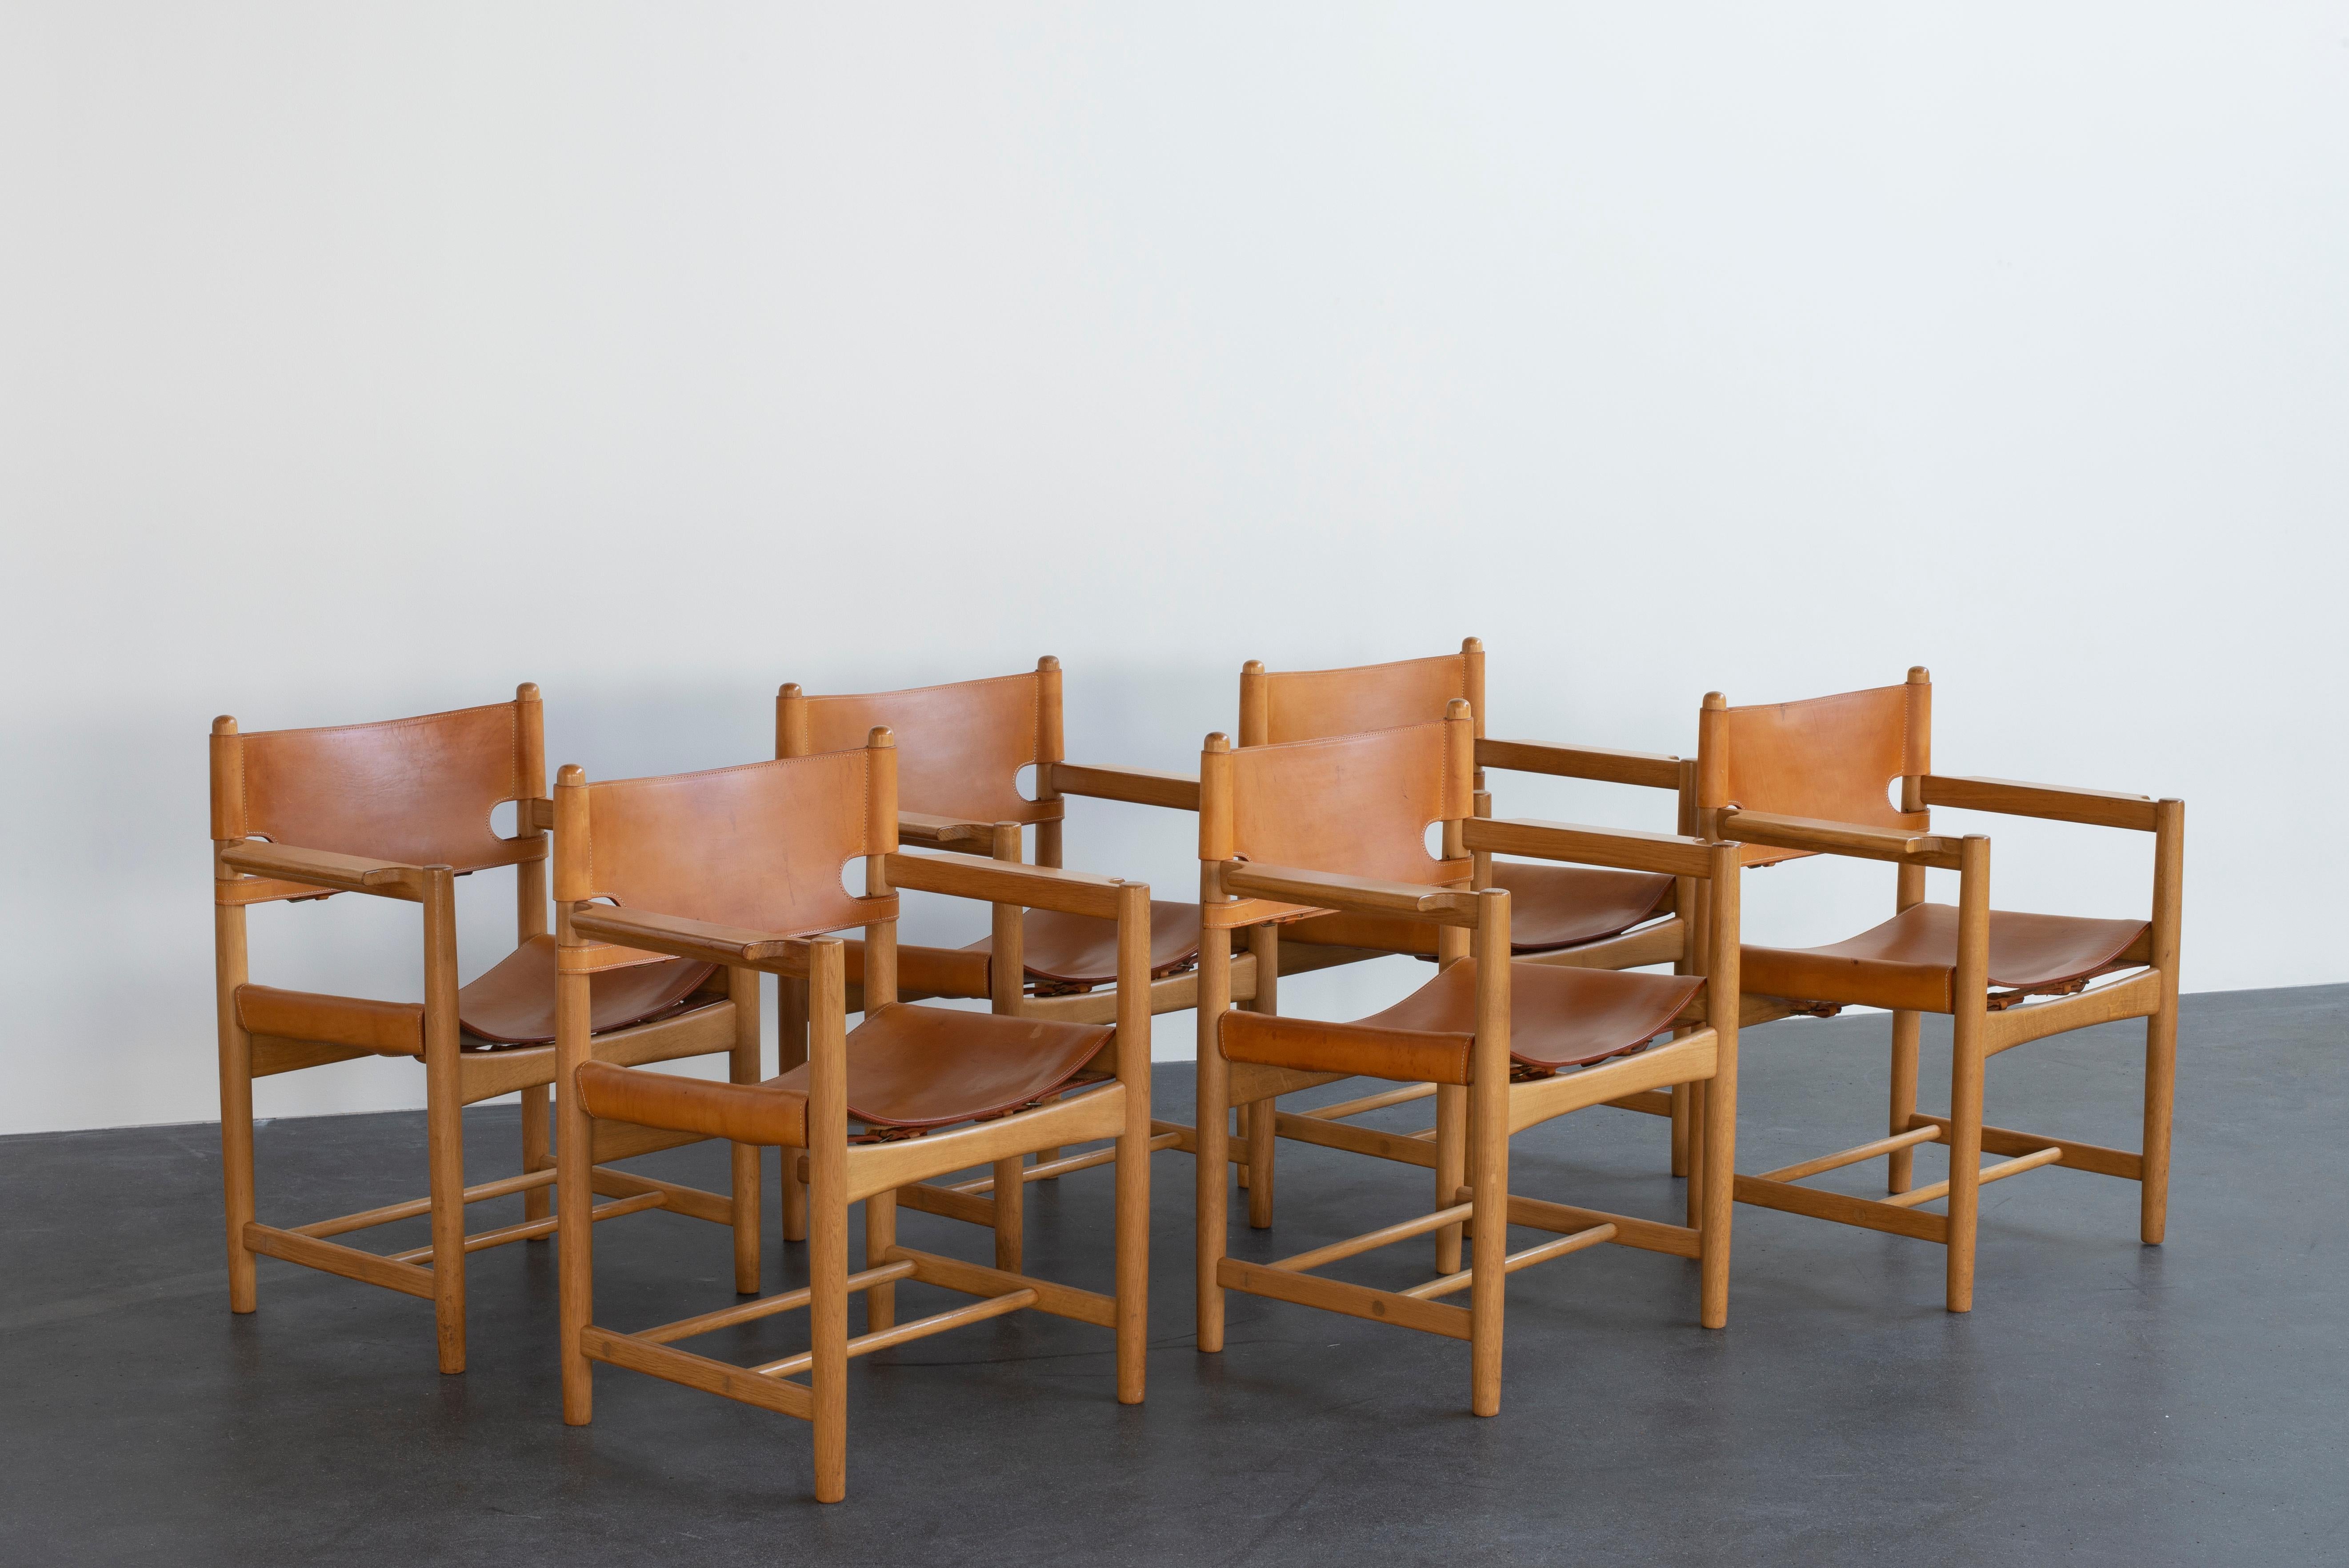 Ensemble de six chaises Børge Mogensen en chêne et cuir tanné naturel. Exécuté par Fredericia Furniture.